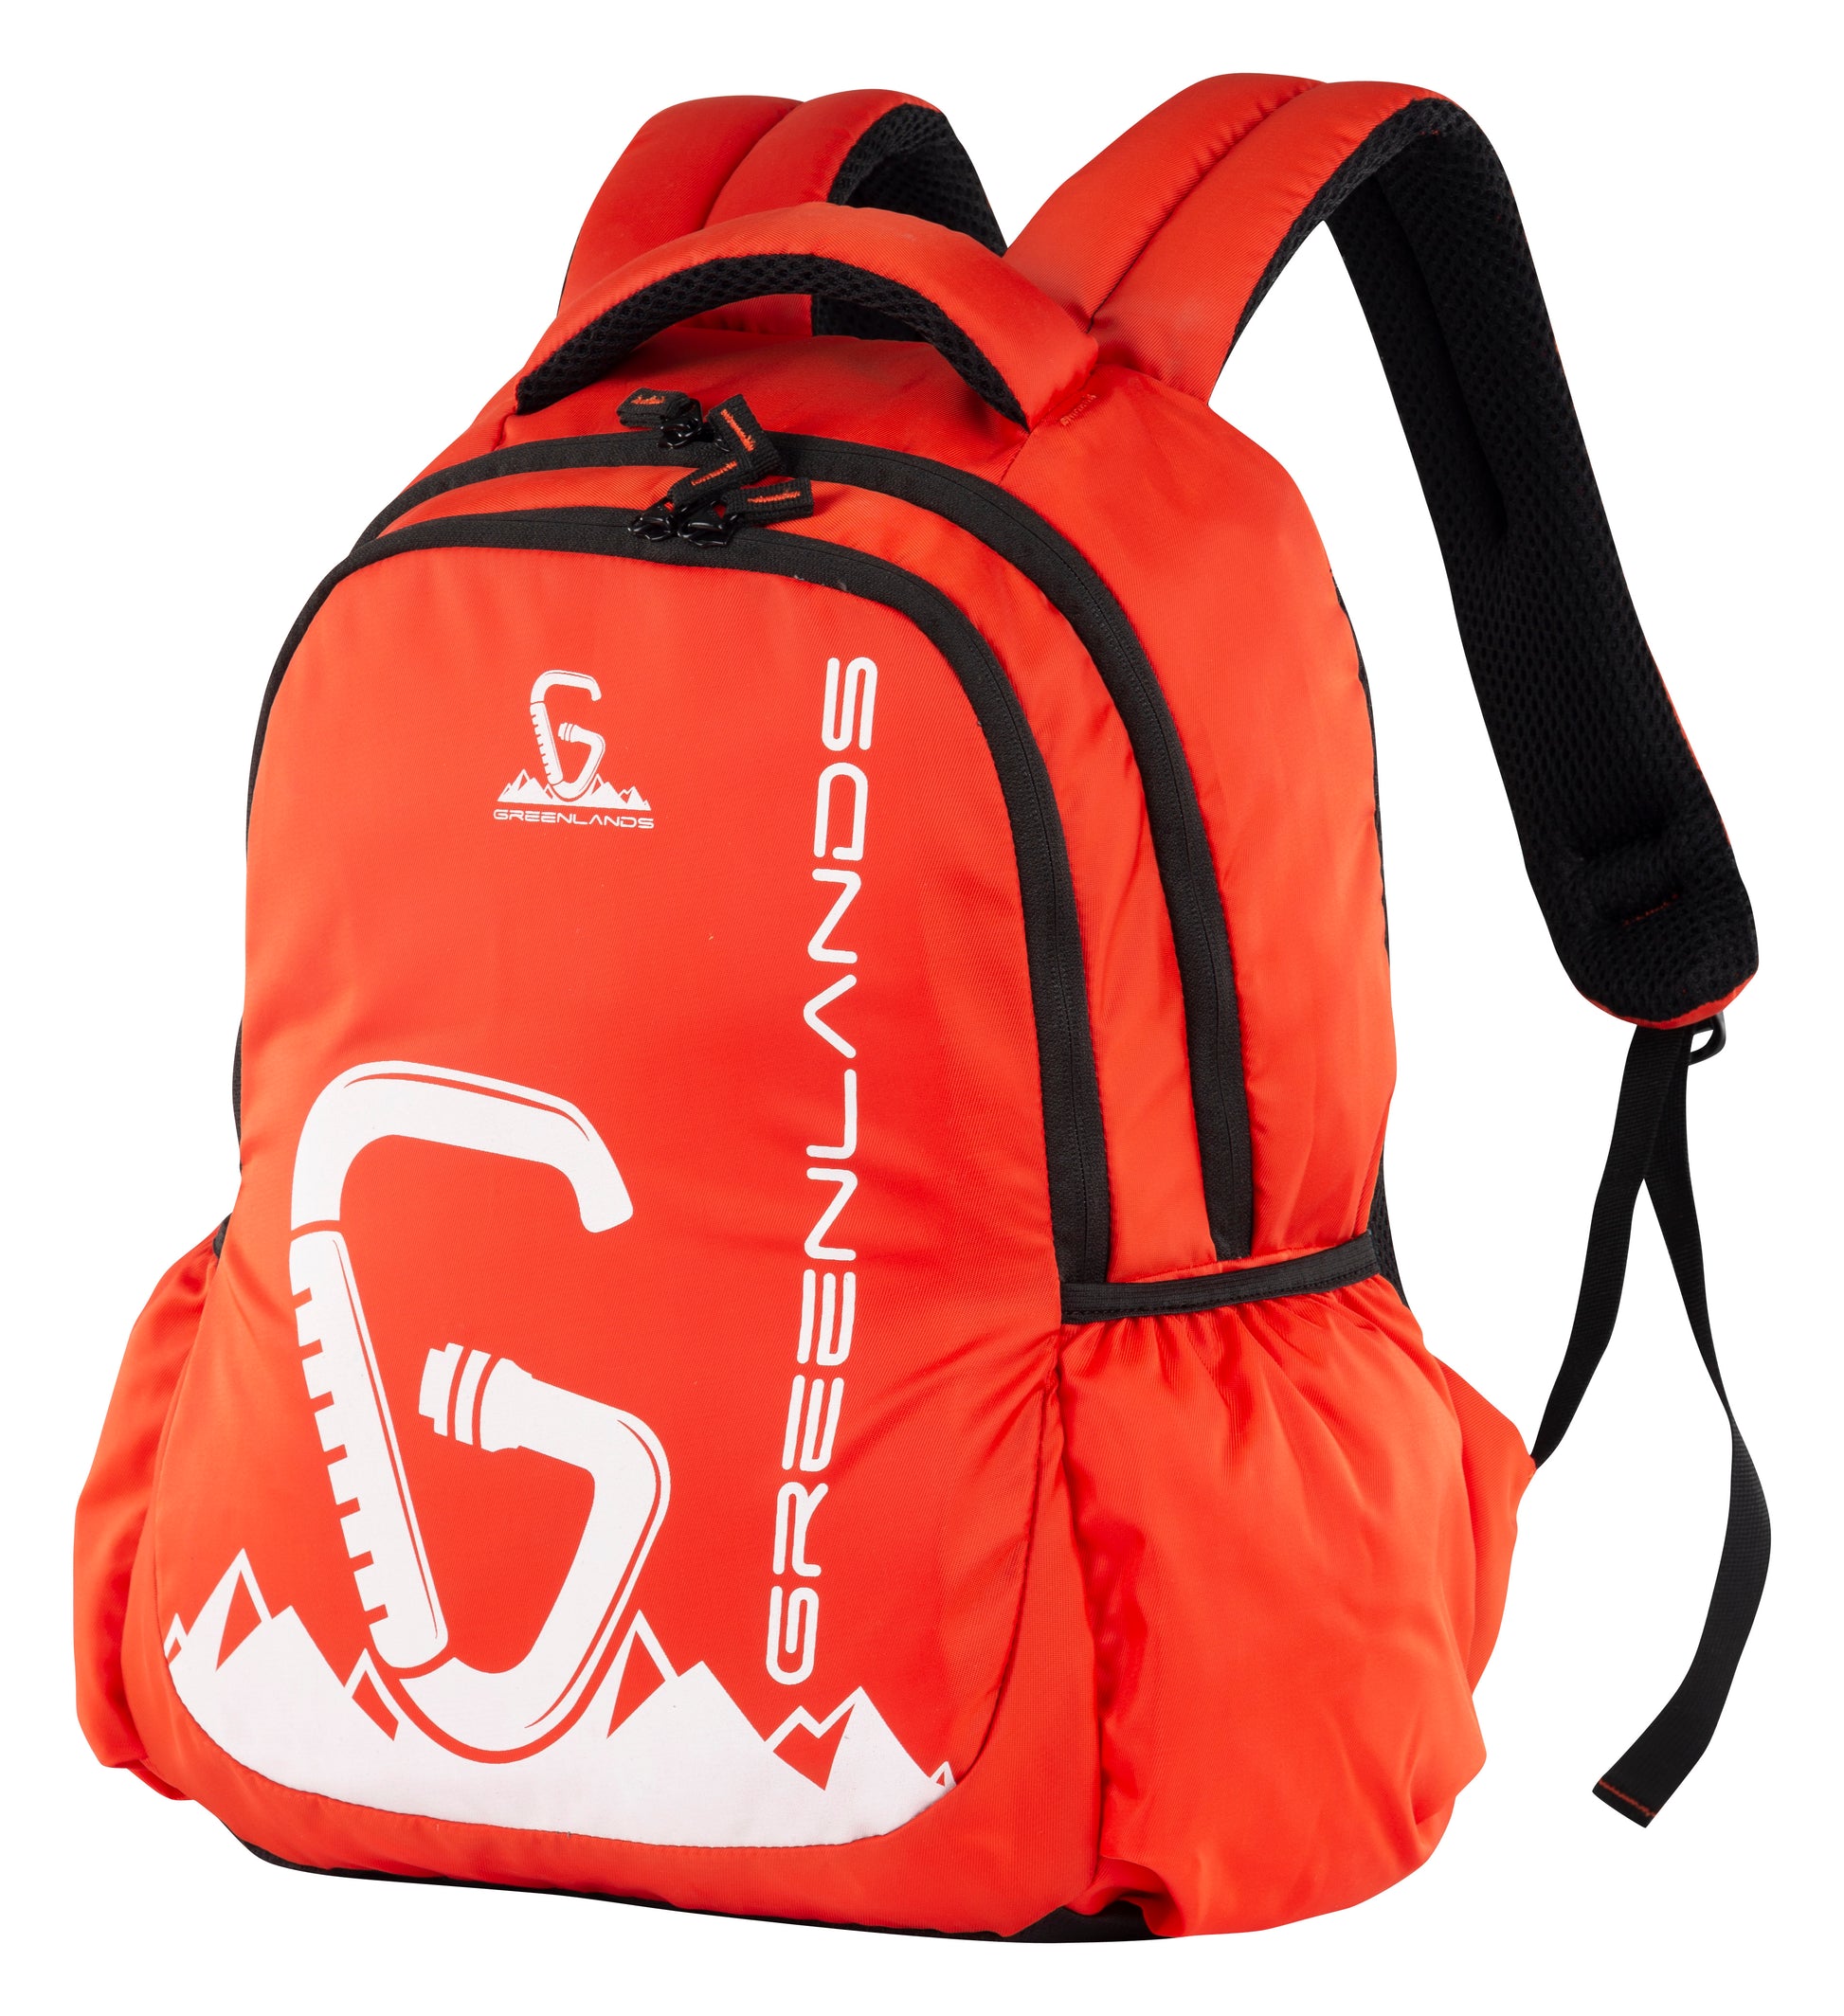 Greenlands Traverse Backpack - Orange